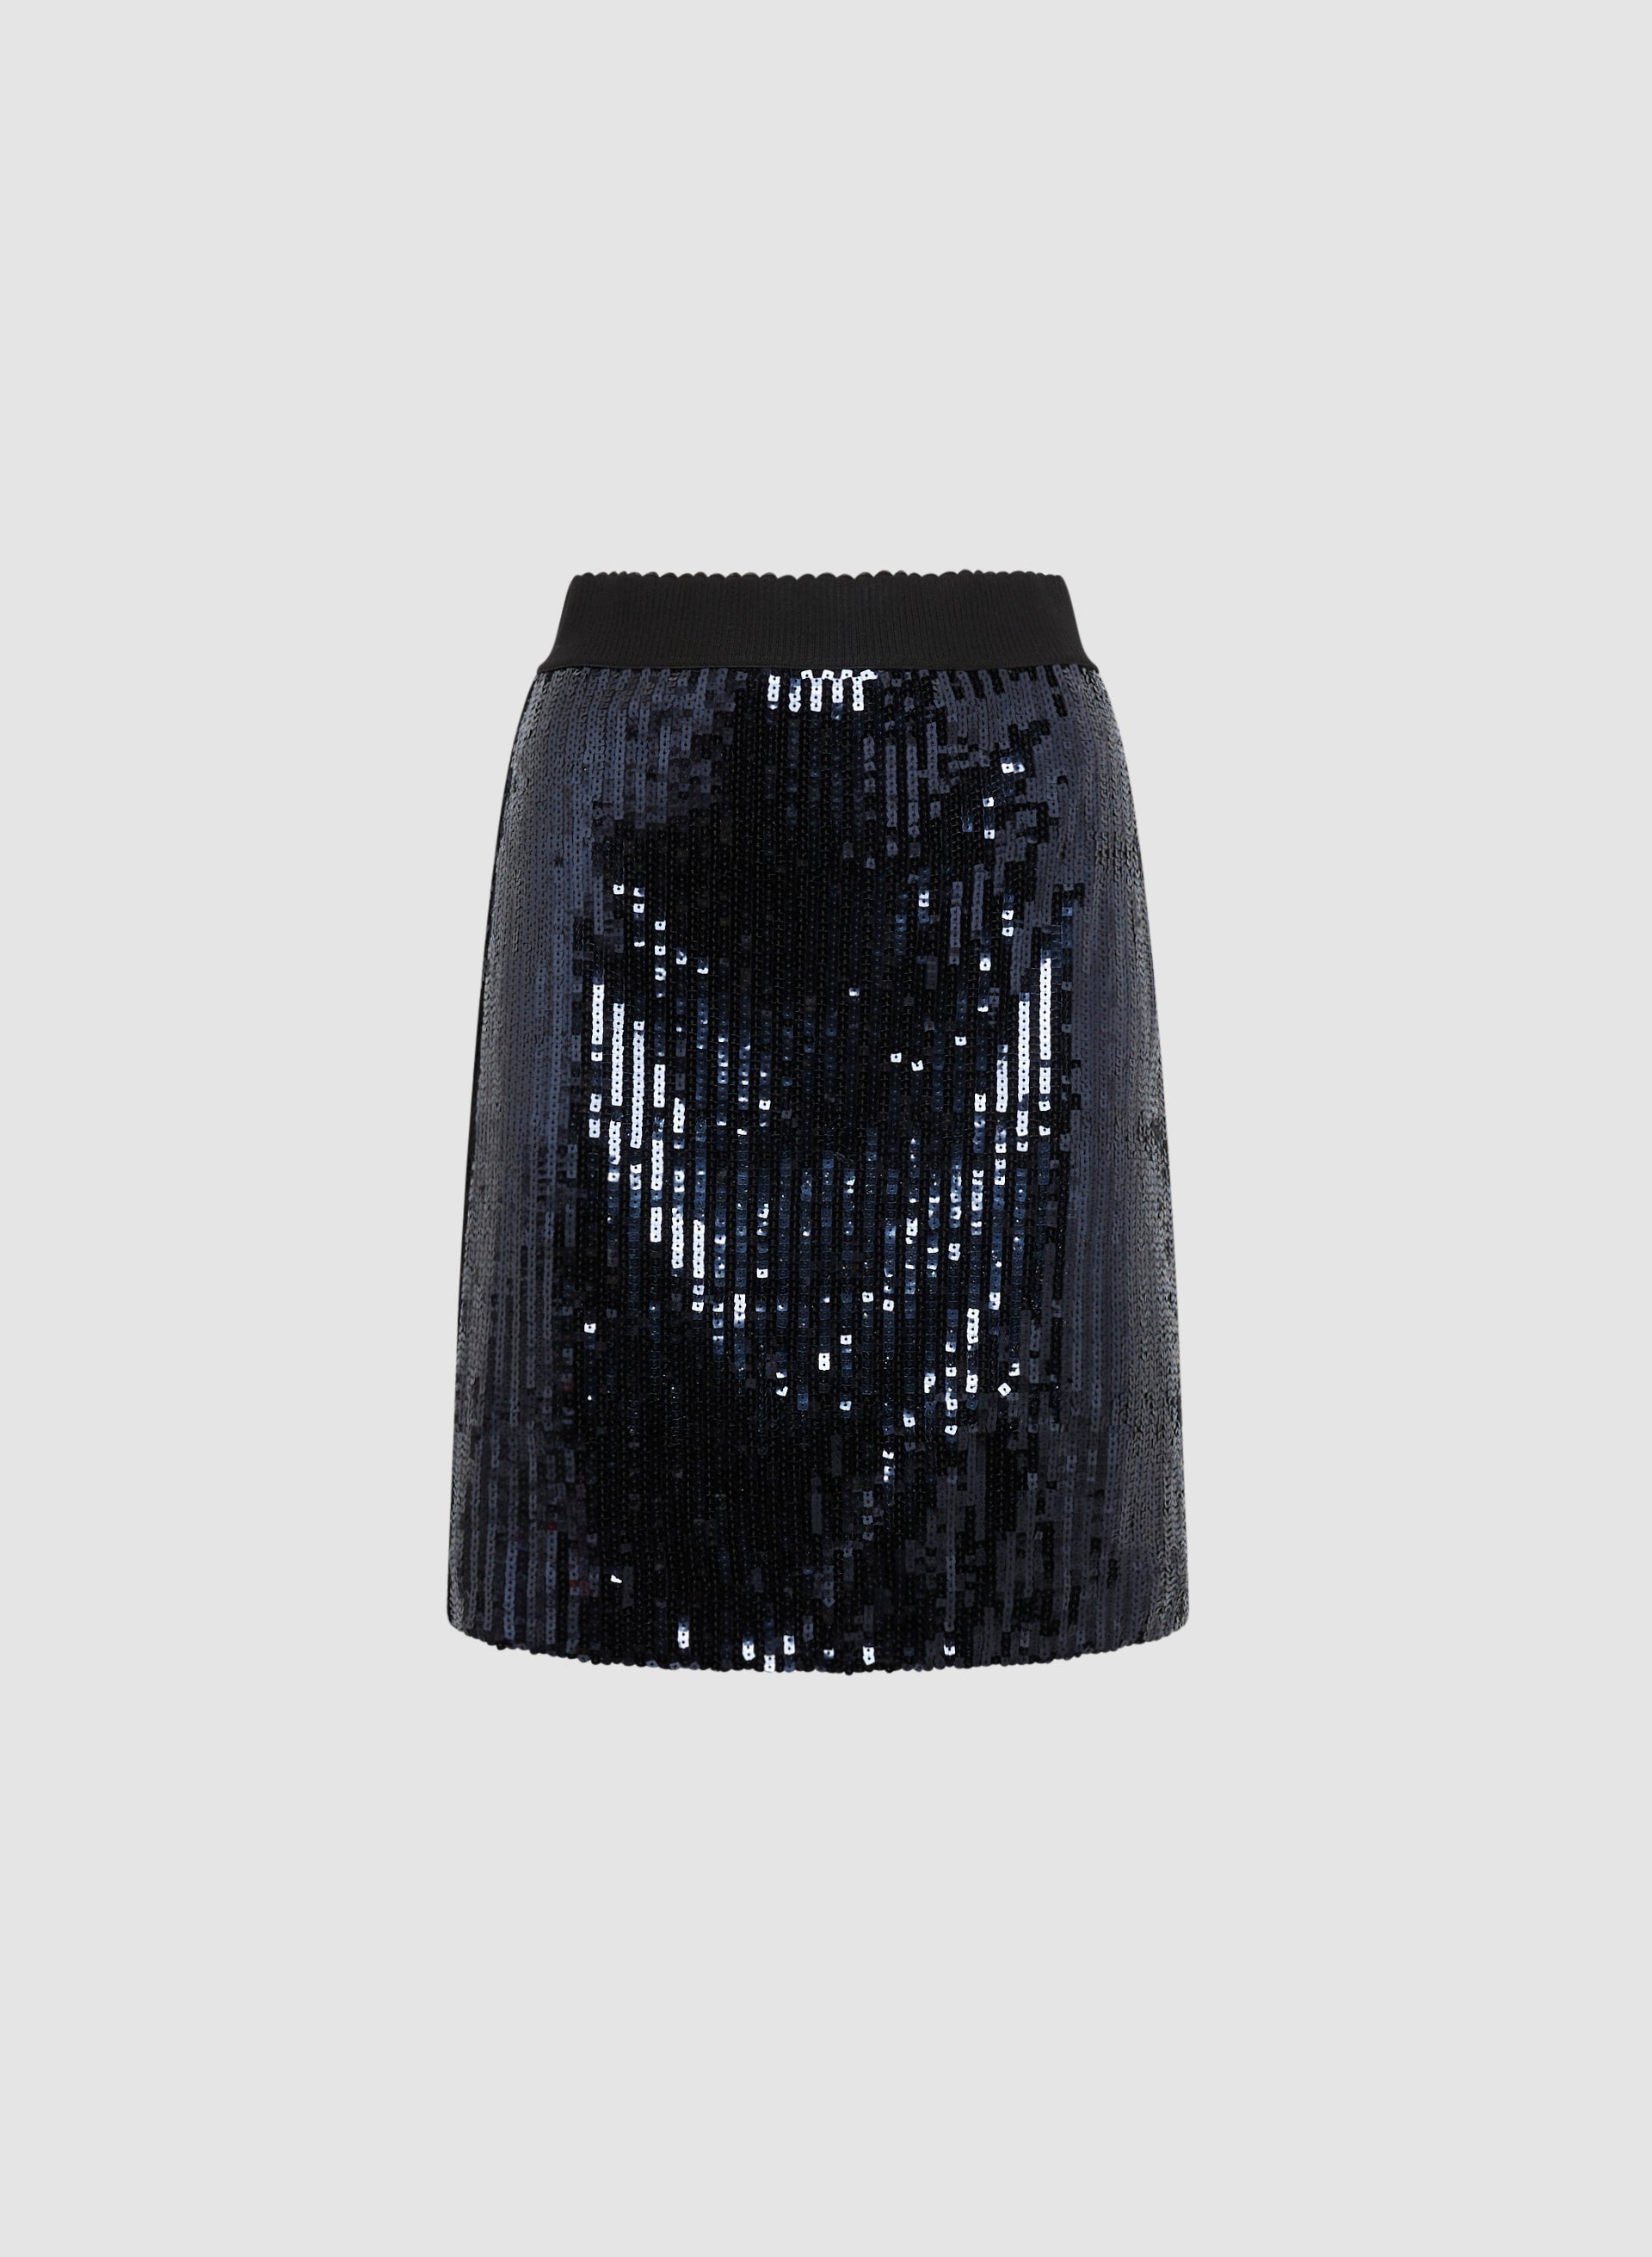 Sequin Pull-On Skirt